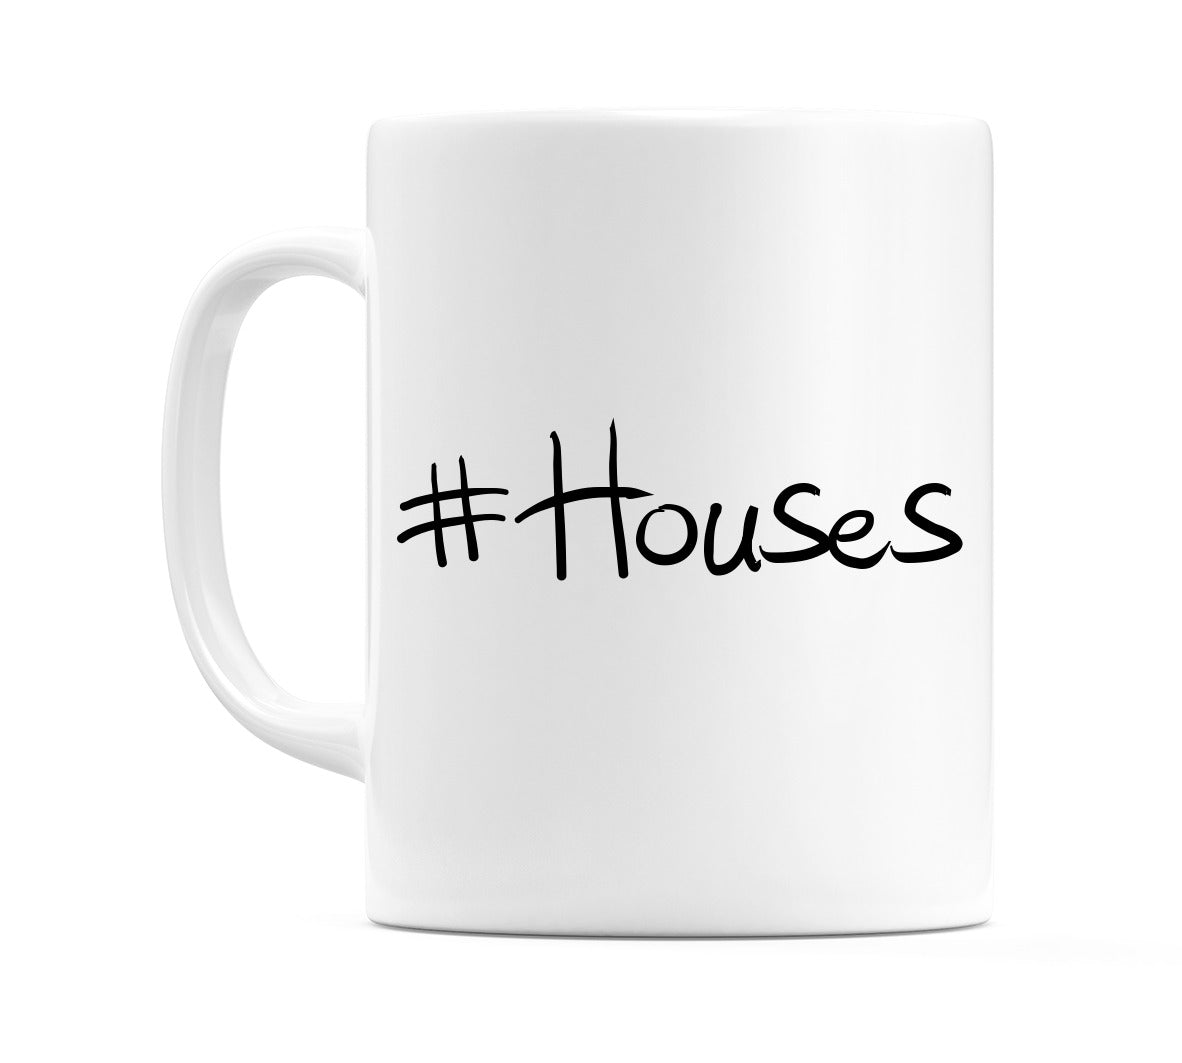 #Houses Mug